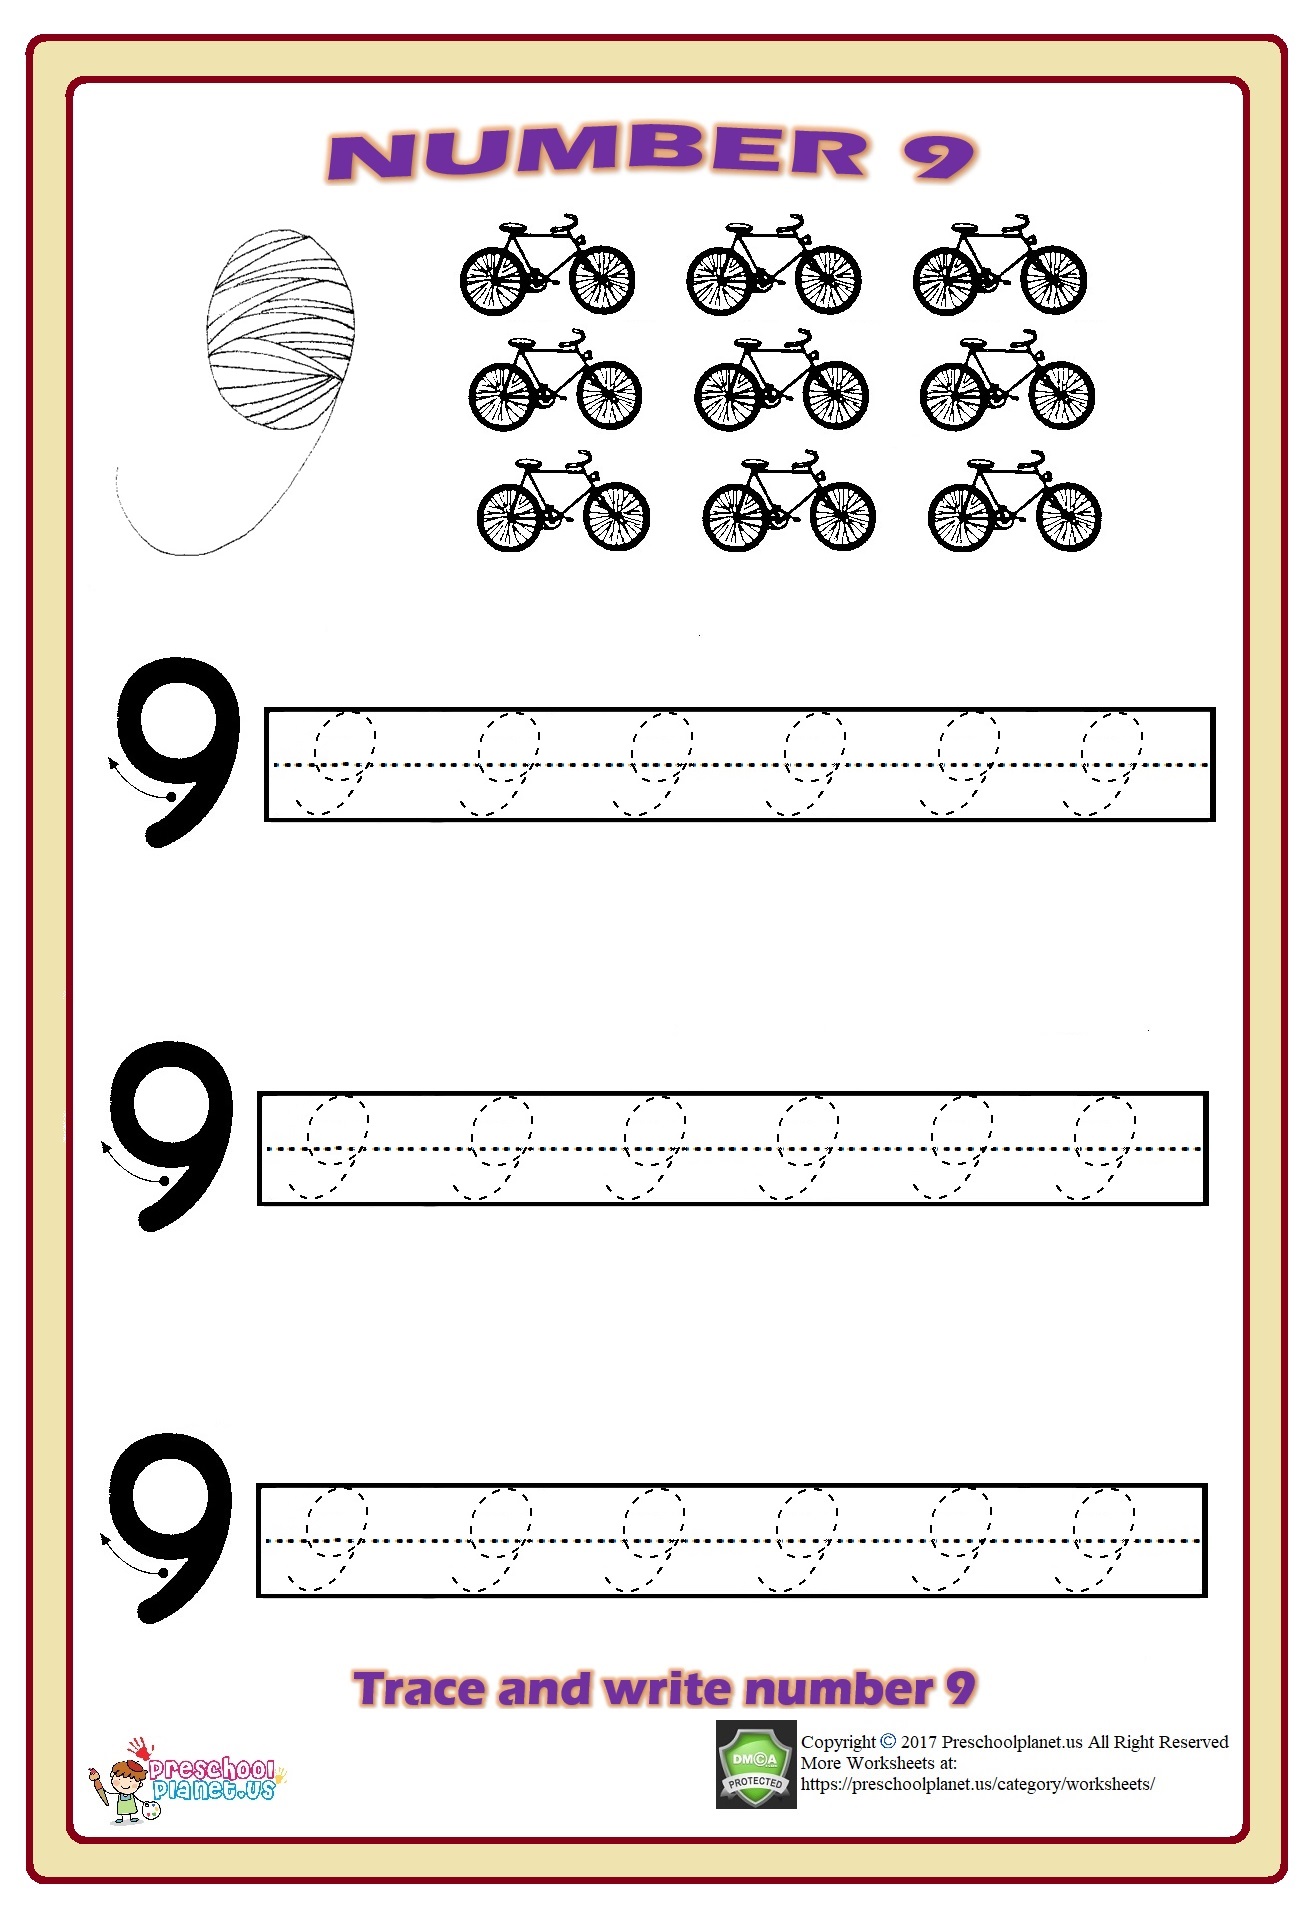 number-9-trace-worksheet-preschoolplanet